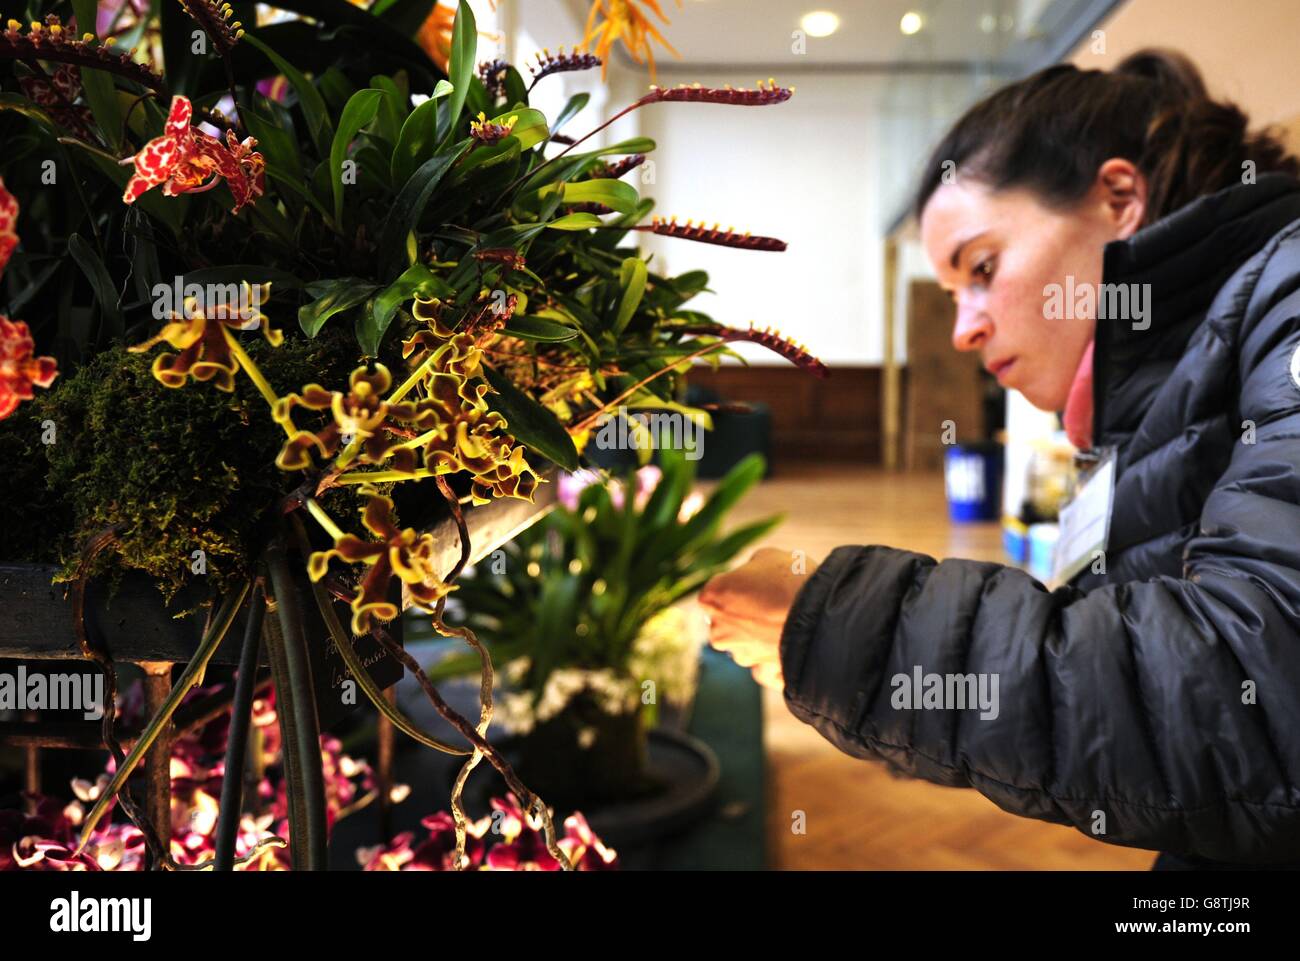 Un exposant organise des fleurs devant le RHS London Spring Plant Extravaganza qui présente le RHS Orchid Show au RHS Horticultural Halls de Londres. Banque D'Images